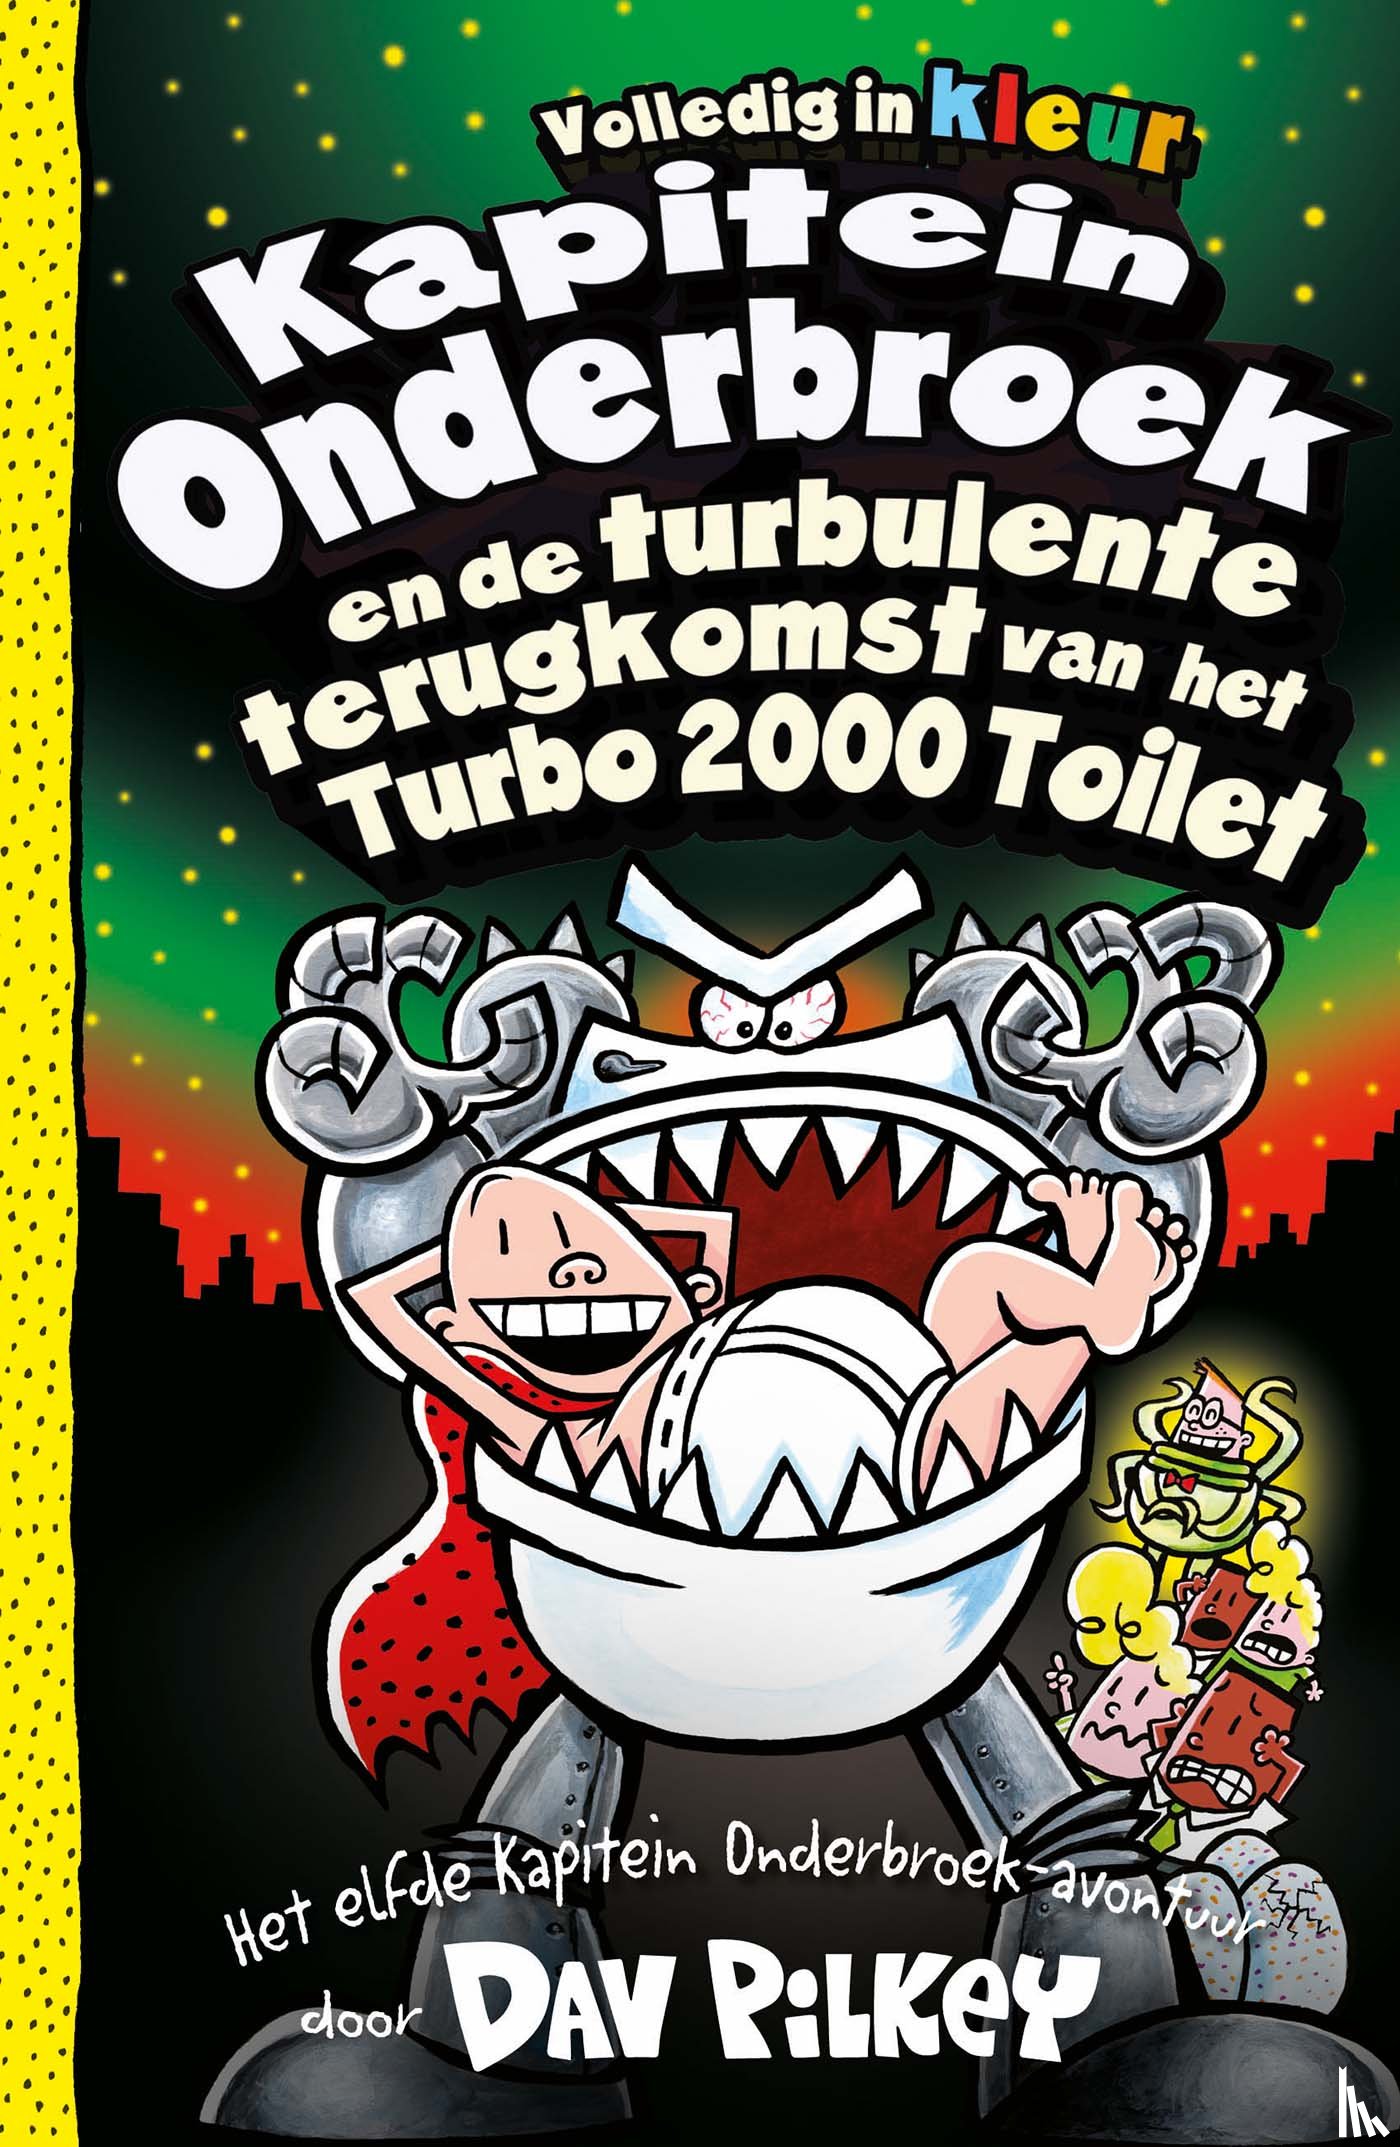 Pilkey, Dav - Kapitein Onderbroek en de turbulente terugkomst van het Turbo 2000 toilet